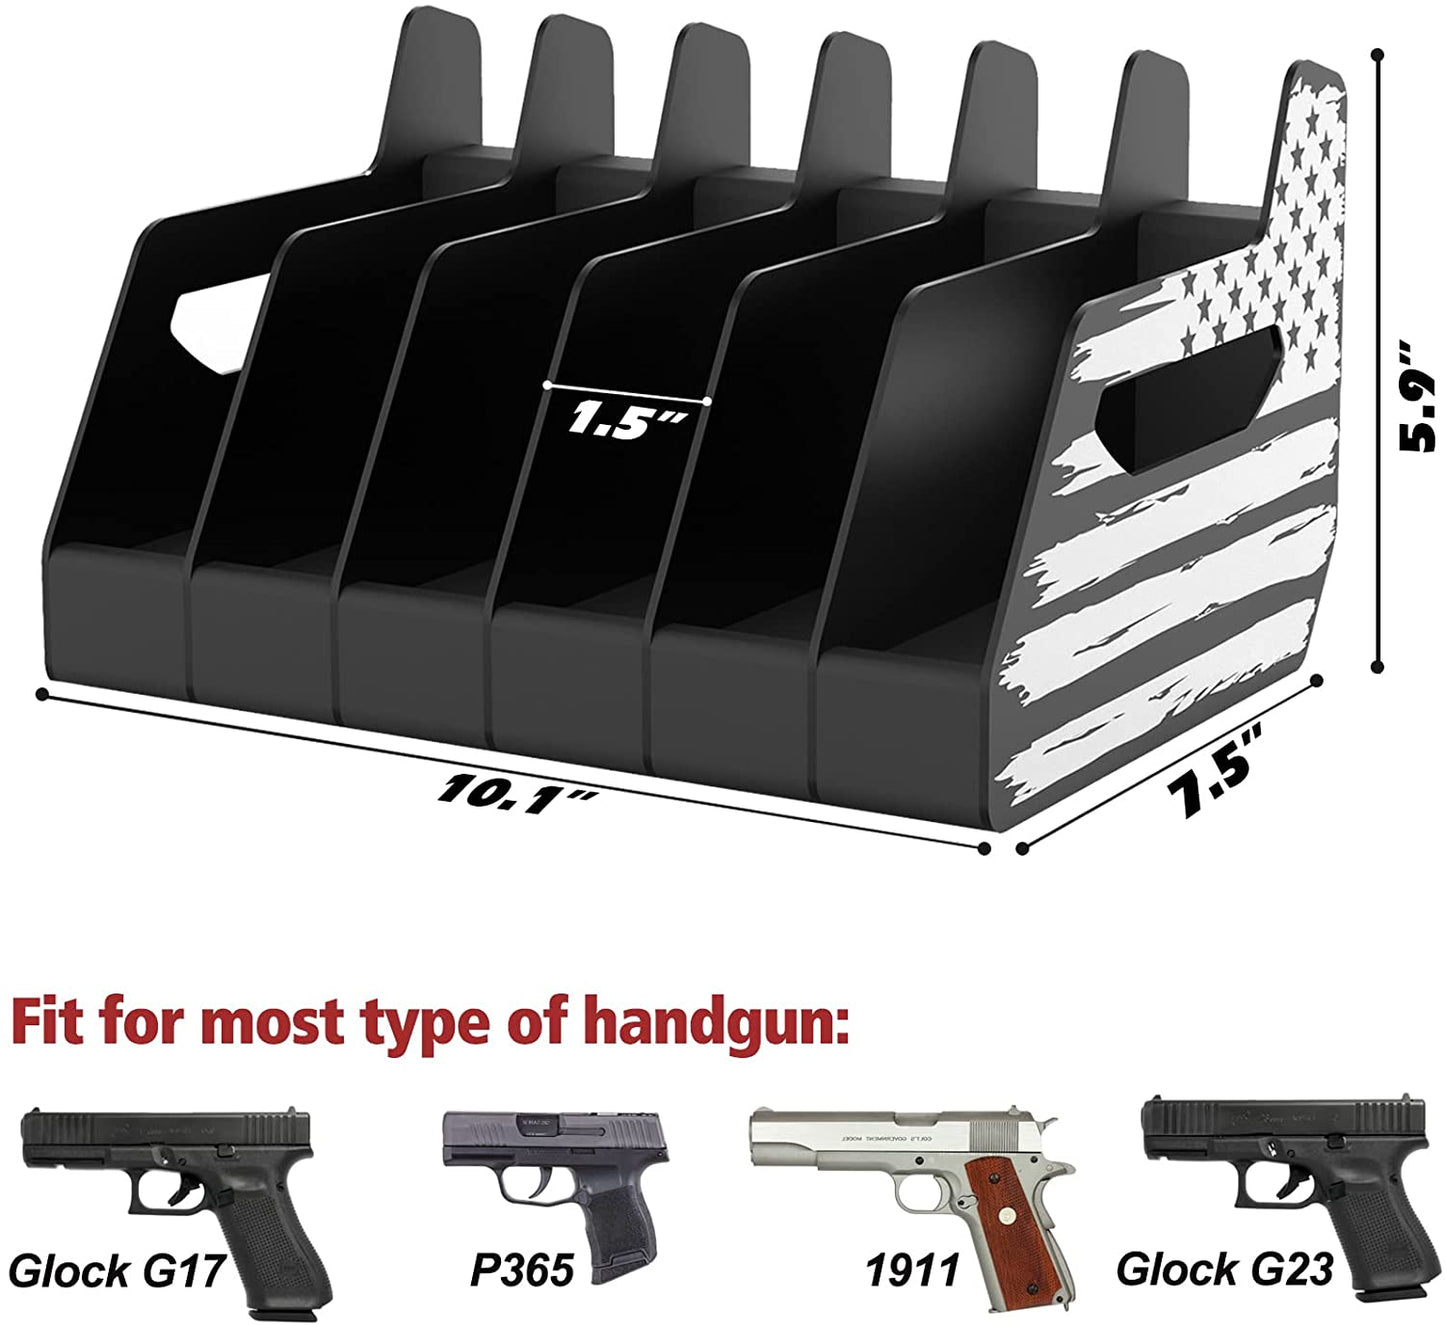 Rack de pistola padrão 6X, suporte de revólver para armazenamento de armário seguro para armas